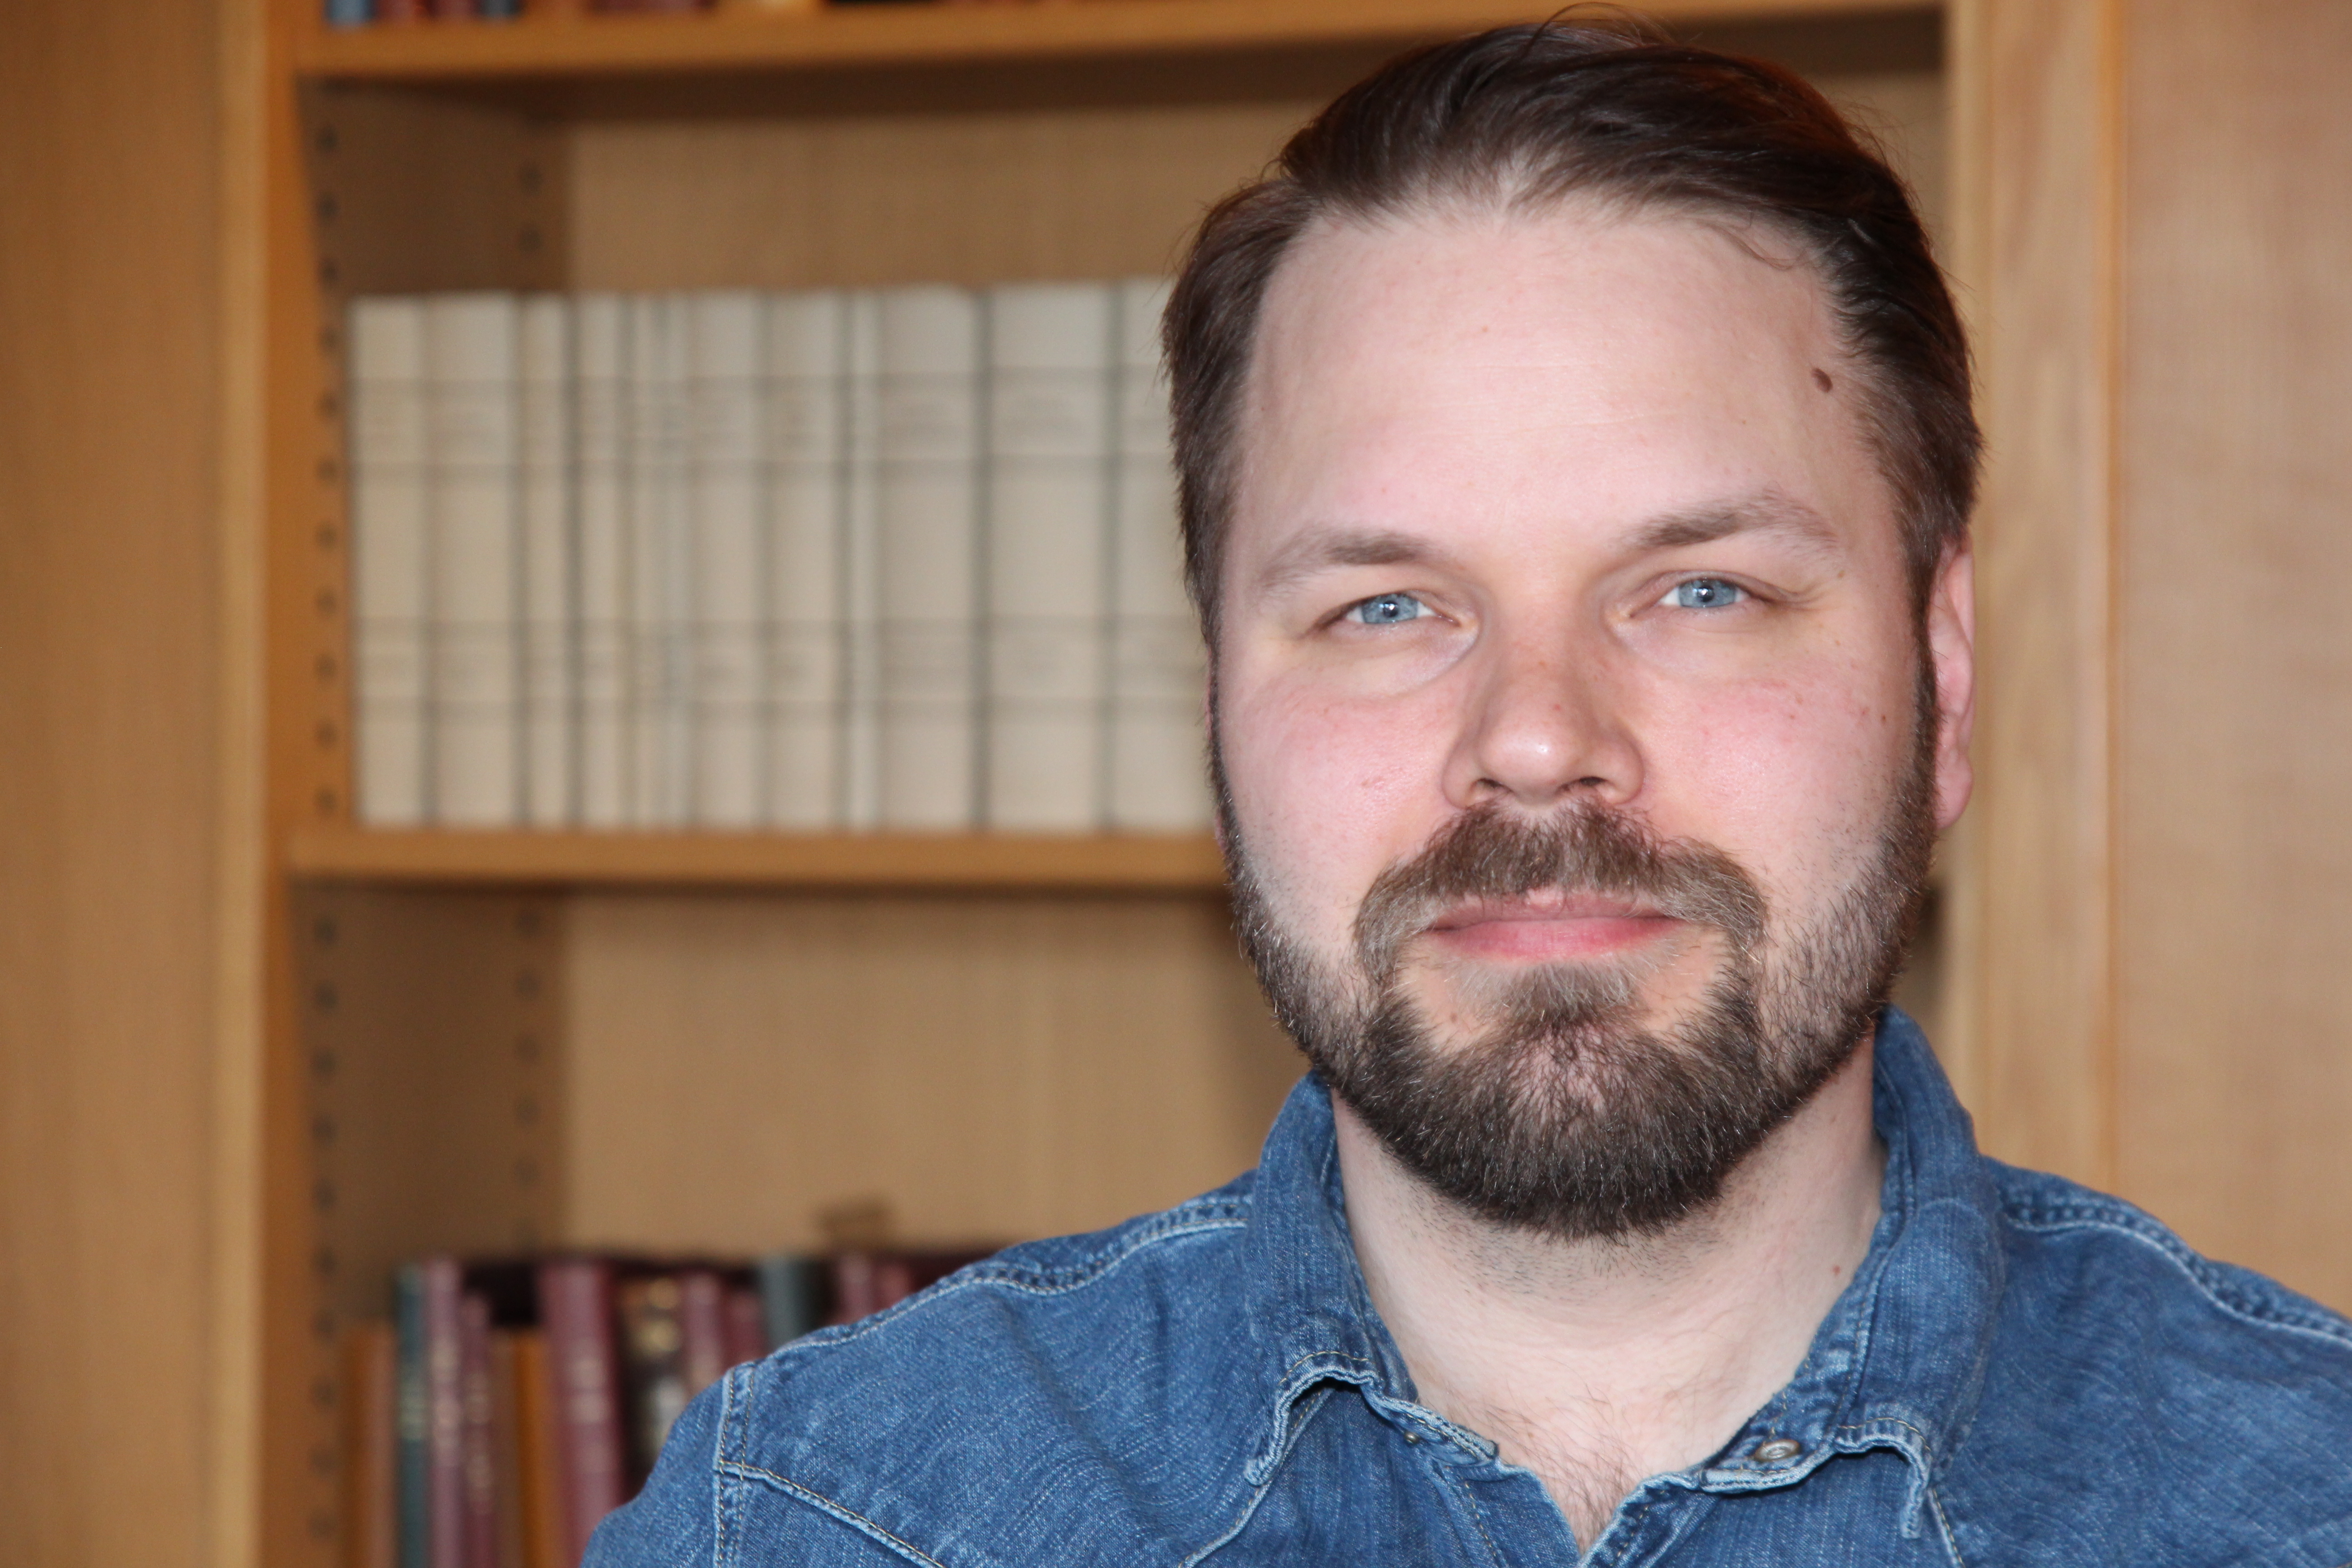 Markus Lindgren Miljöpartiet. Han är klädd i en mellanblå jeansskjorta med tryckknappar, har mörkt hår och skägg. I bakgrunden ser man en bokhylla fylld med gamla böcker i oskärpa.